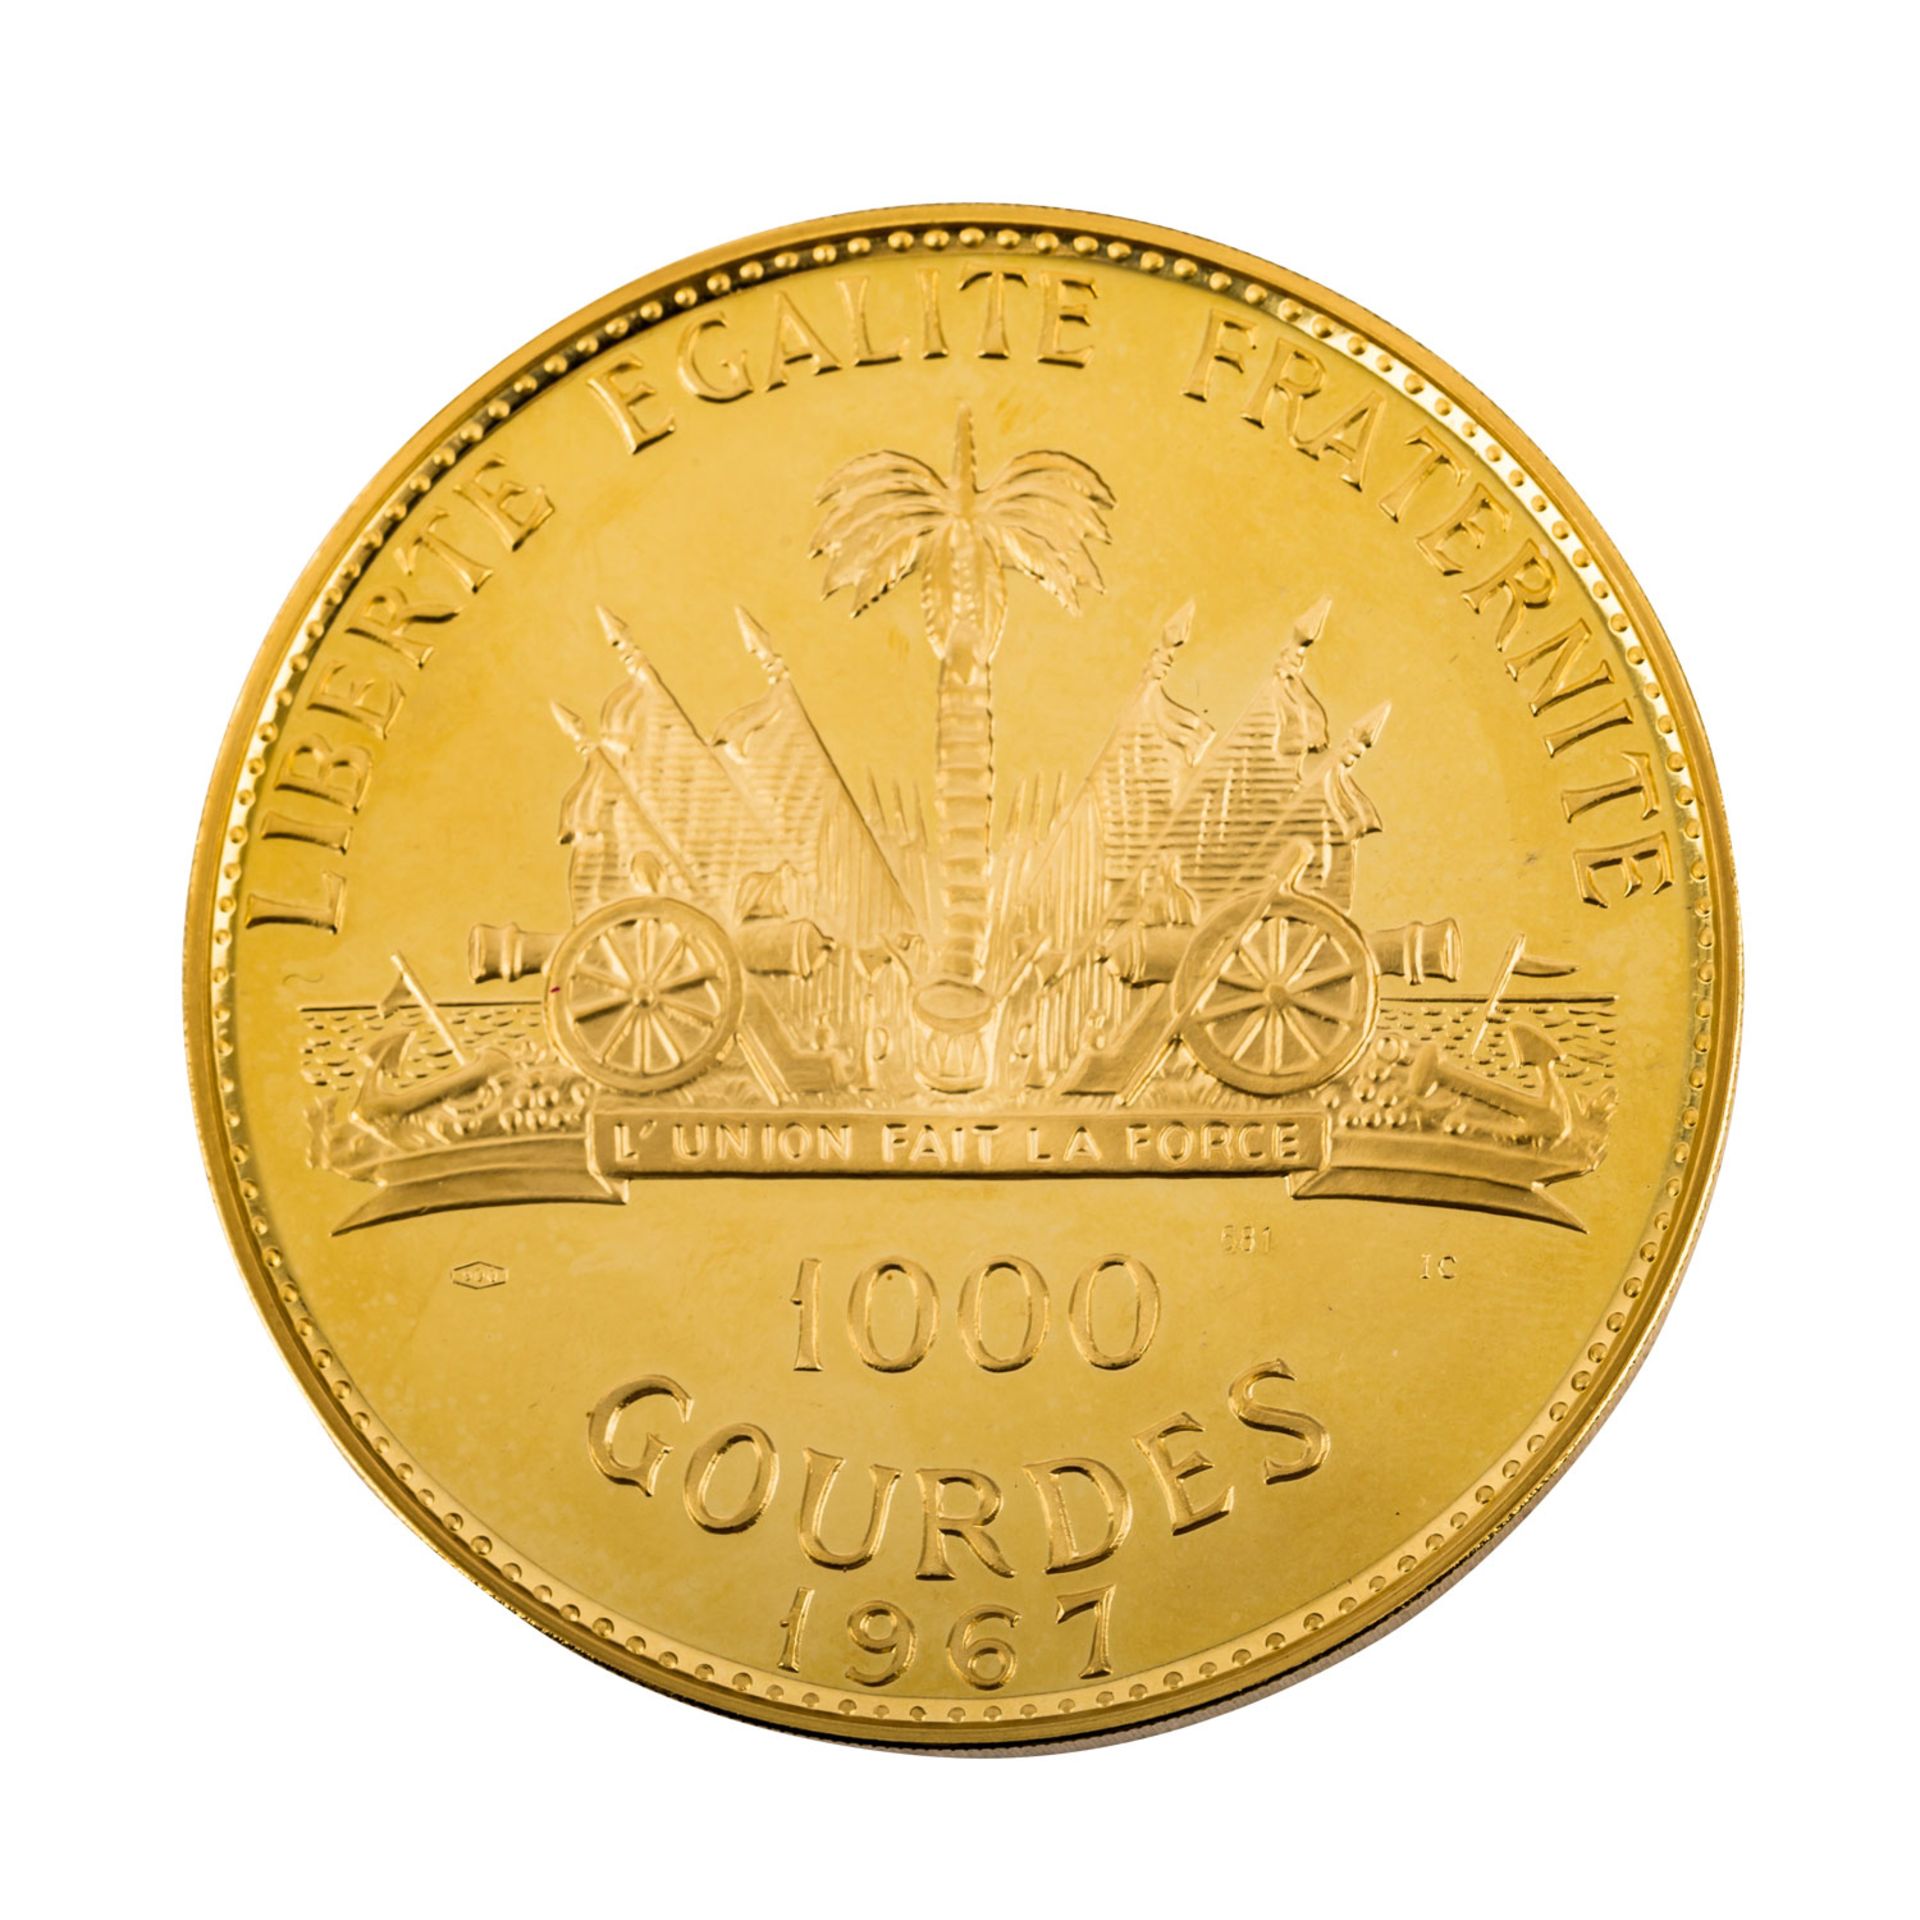 Haiti - 1000 Gourdes 1967, 197,4 Gramm Raugewicht, - Bild 2 aus 2